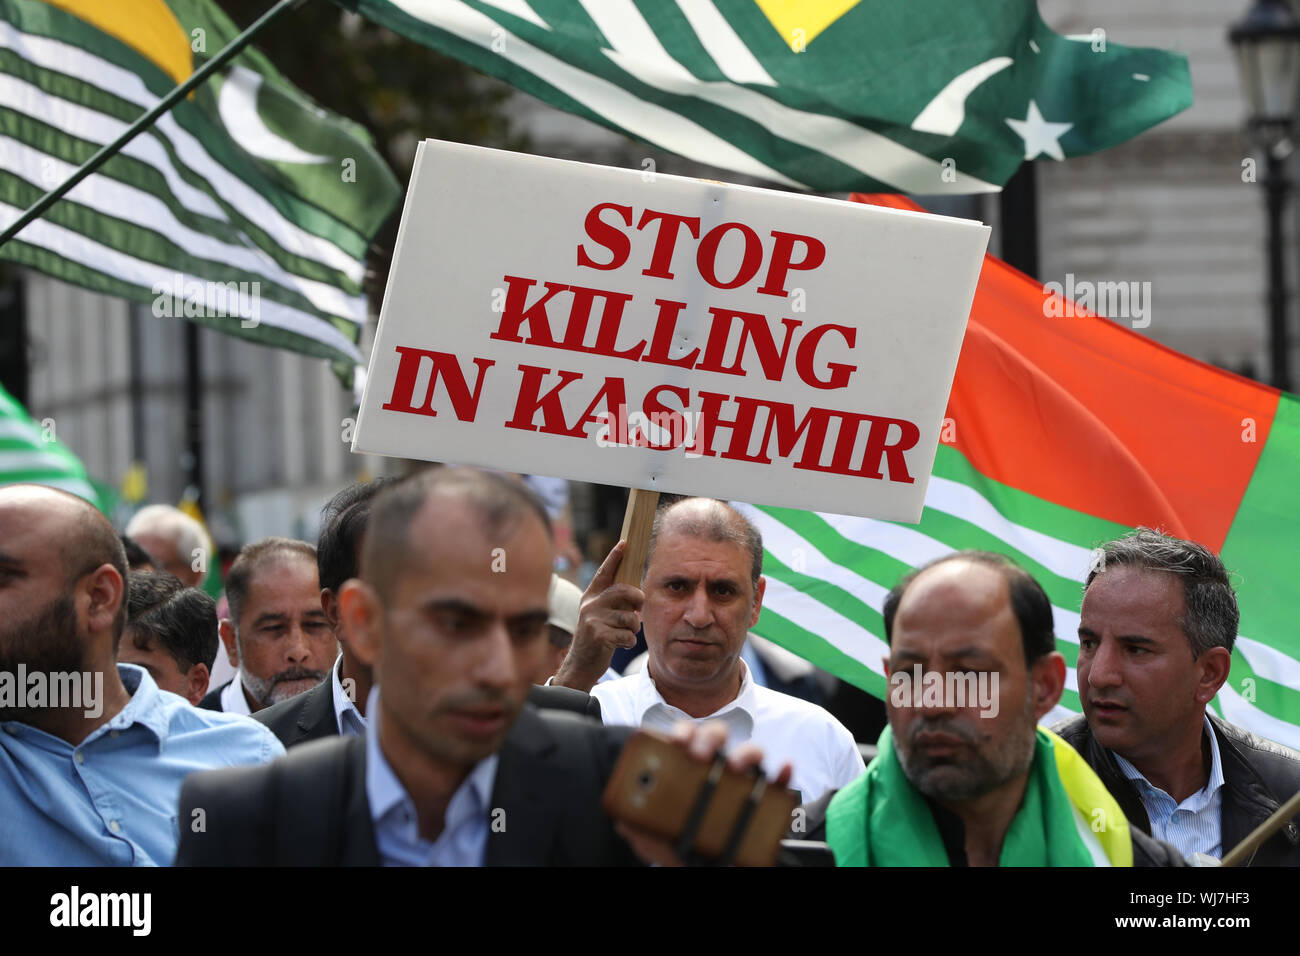 Pro-Kashmiri Unabhängigkeit Mitkämpfer Spaziergang entlang Whitehall in London, über die Frage von Indien Aufhebung des Artikel 370, ein Gesetz, mit dem die strittigen Bundesstaat Kaschmir semi Unabhängigkeit über eine gewisse Autonomie gegeben hatte. Stockfoto